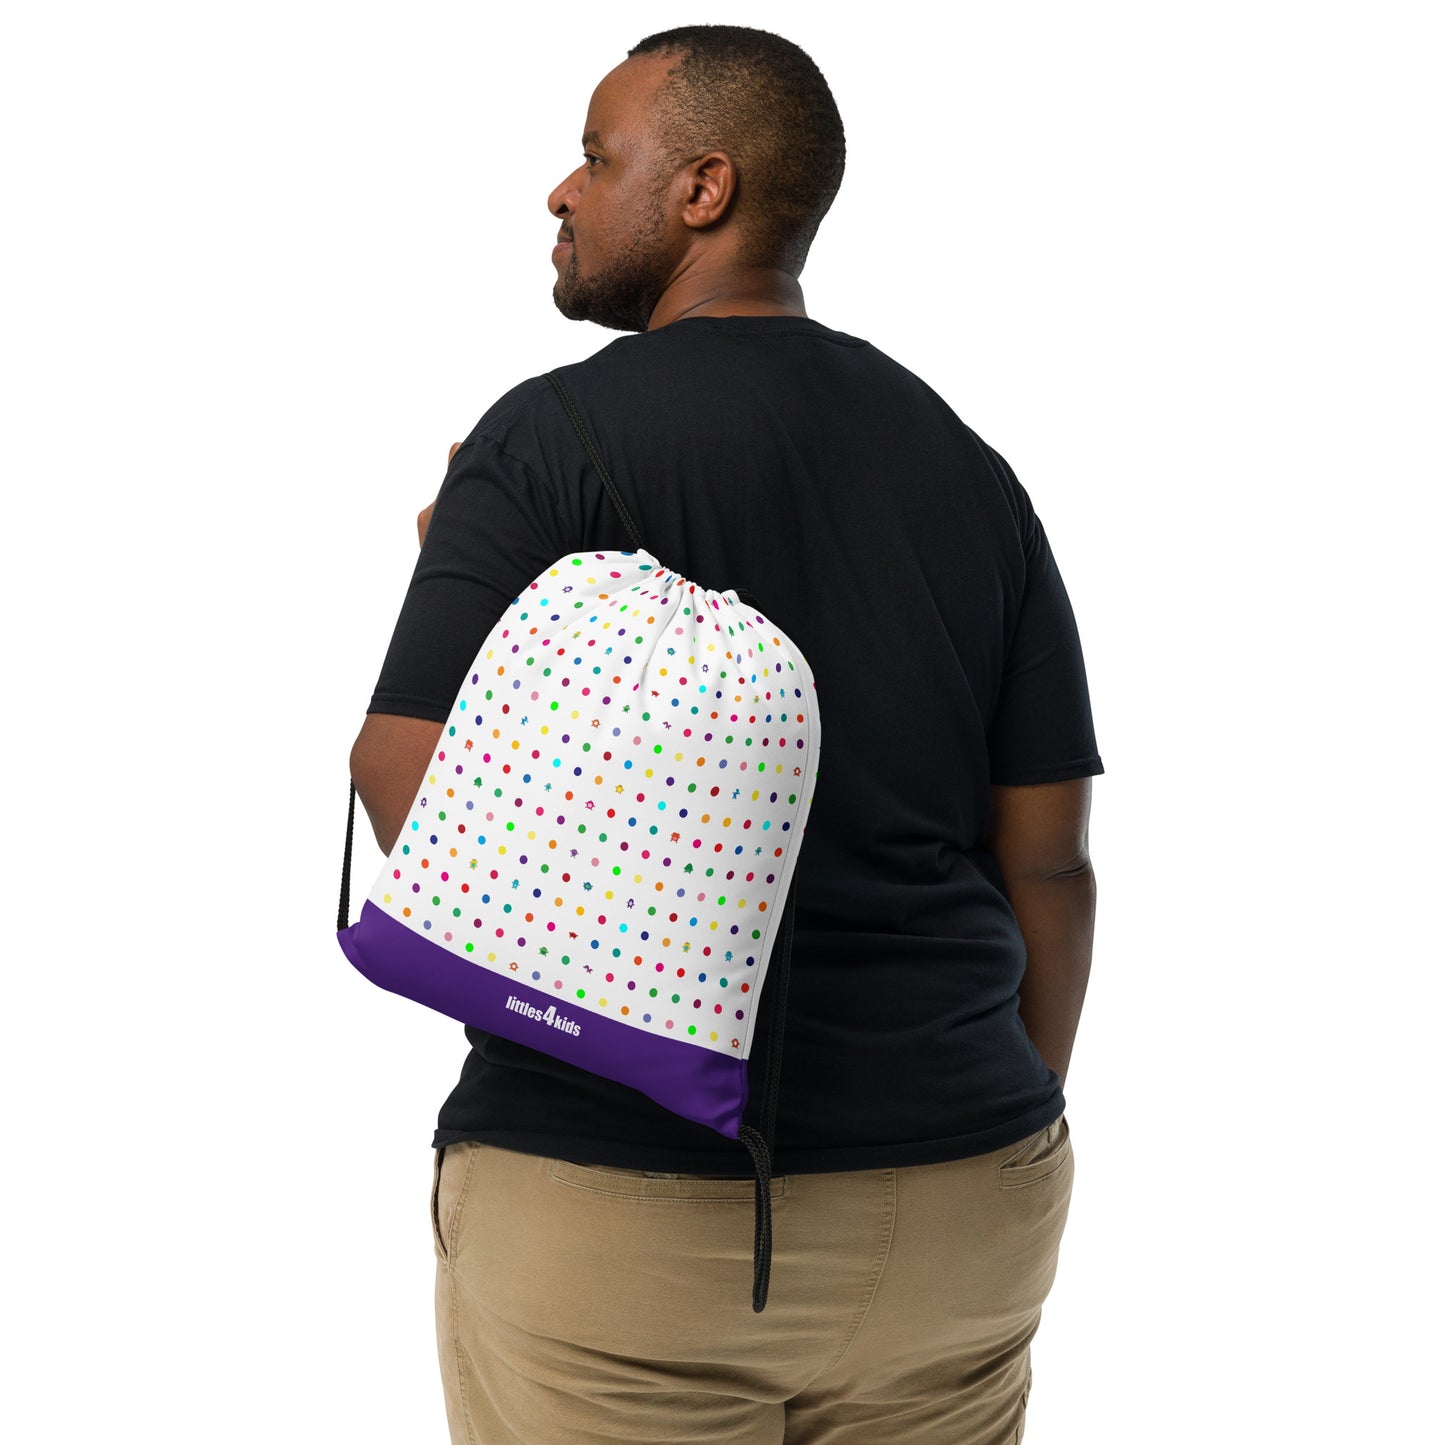 White Small Dot Monster drawstring bag purple bottom man carrying